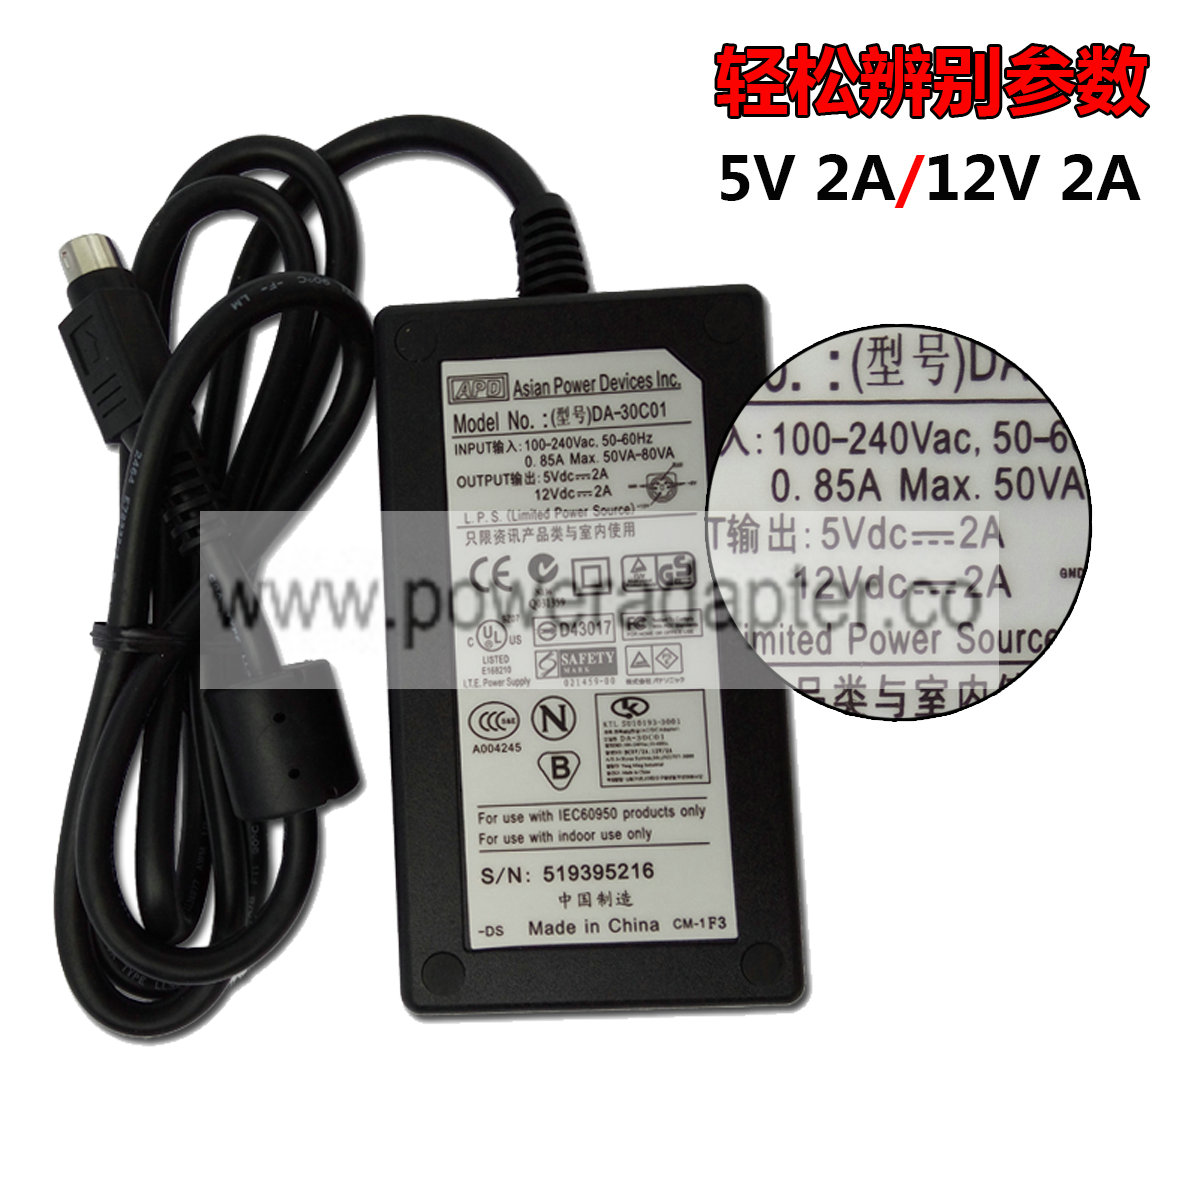 new original APD 12V 2A 5V 2A 5 pin AC Power Adapter DA-30C01 Bundled Items: Power Cable MPN: PWR-002-004 Output V - Click Image to Close